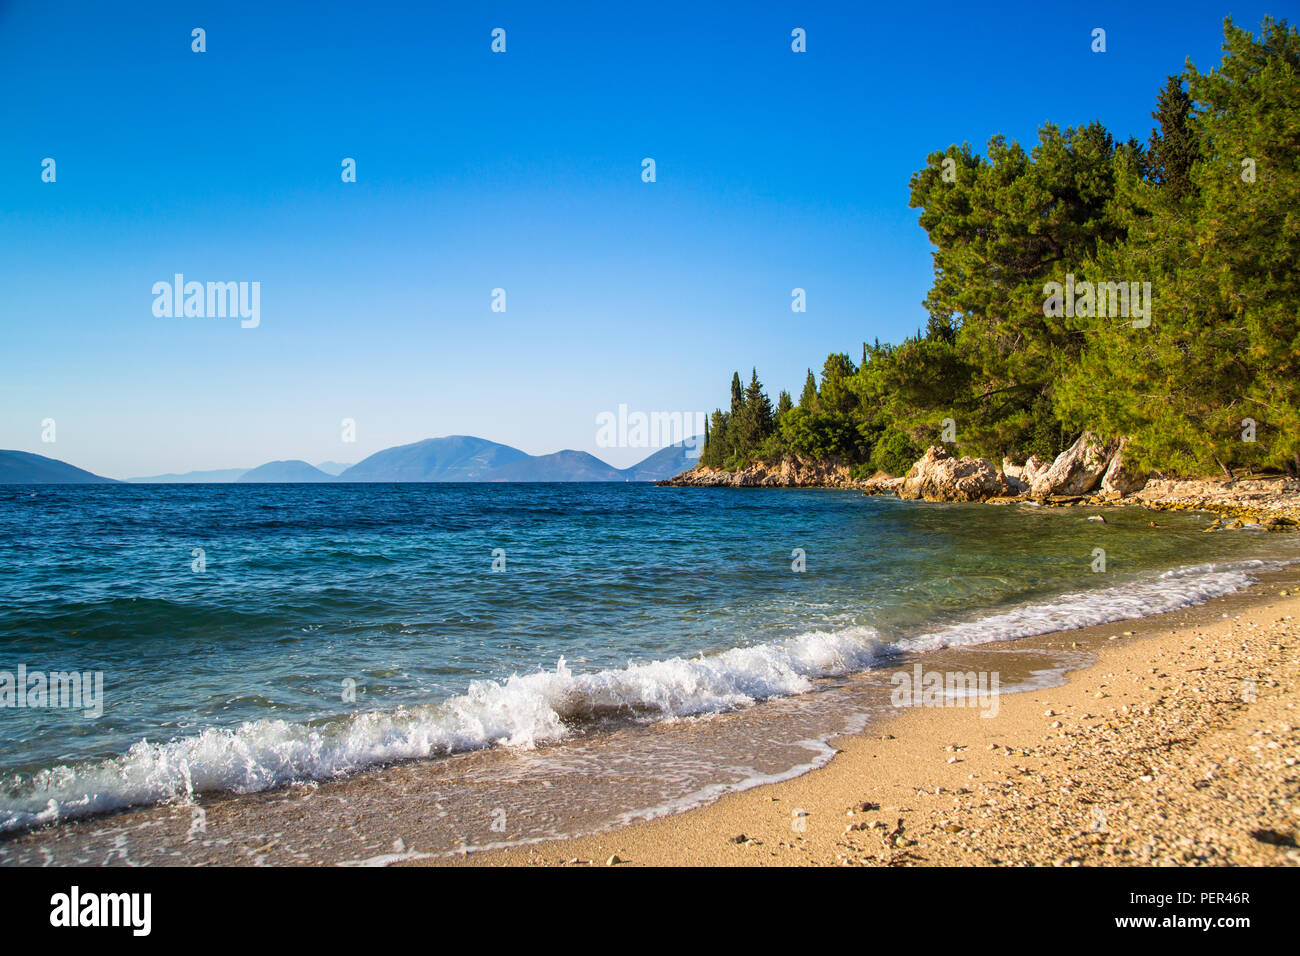 De belles vues sur la mer - la mer, les rochers, les forêts et les montagnes. Îles grecques dans la mer Ionienne. Banque D'Images